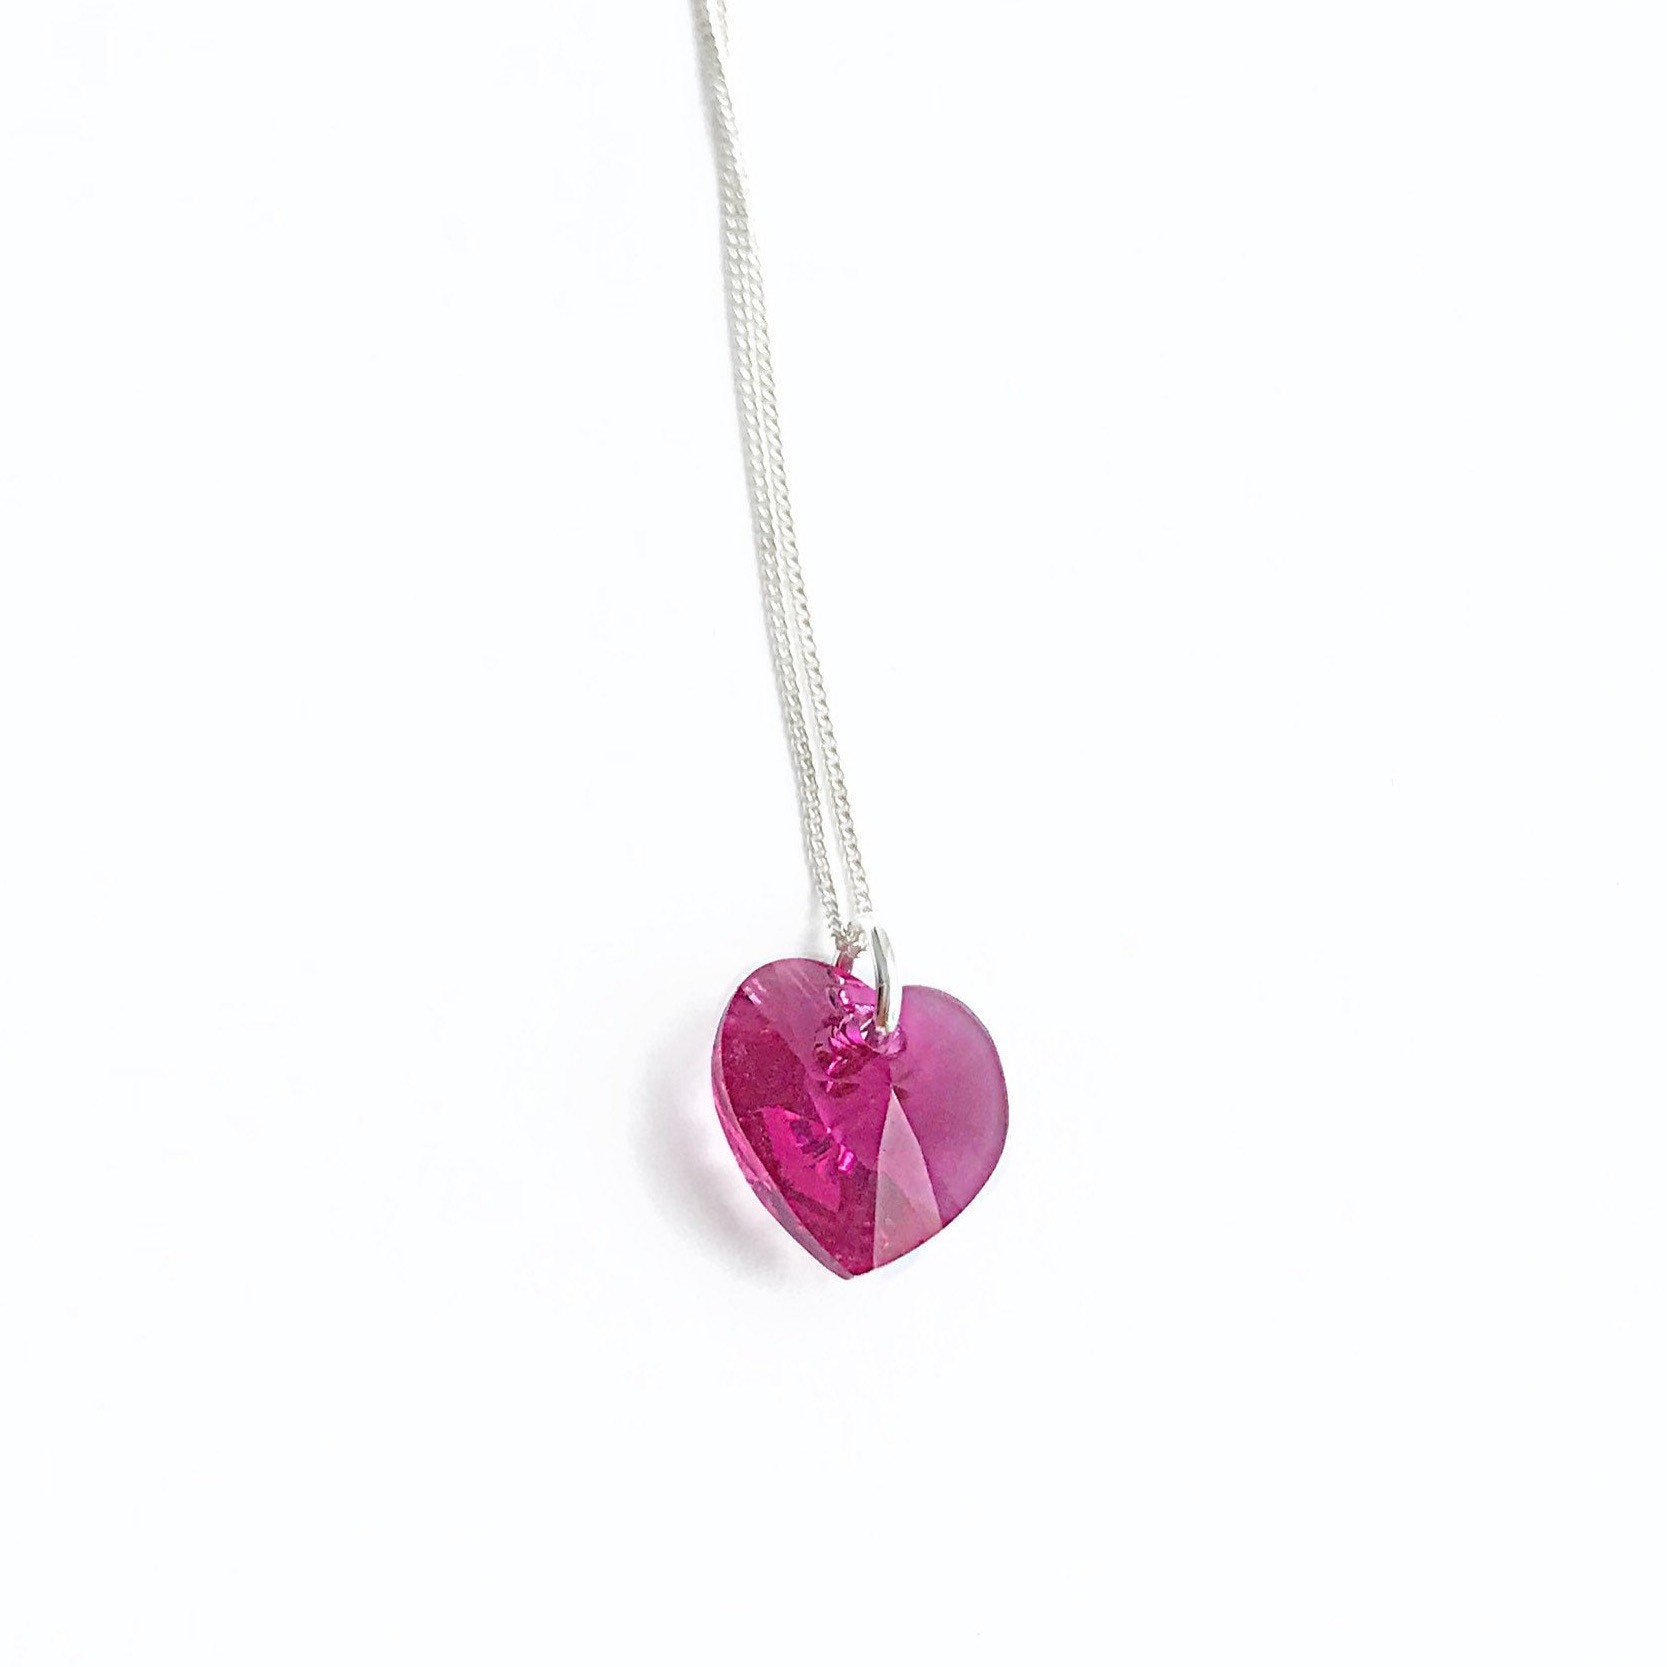 Pretty Swarovski Necklace with Pink Heart